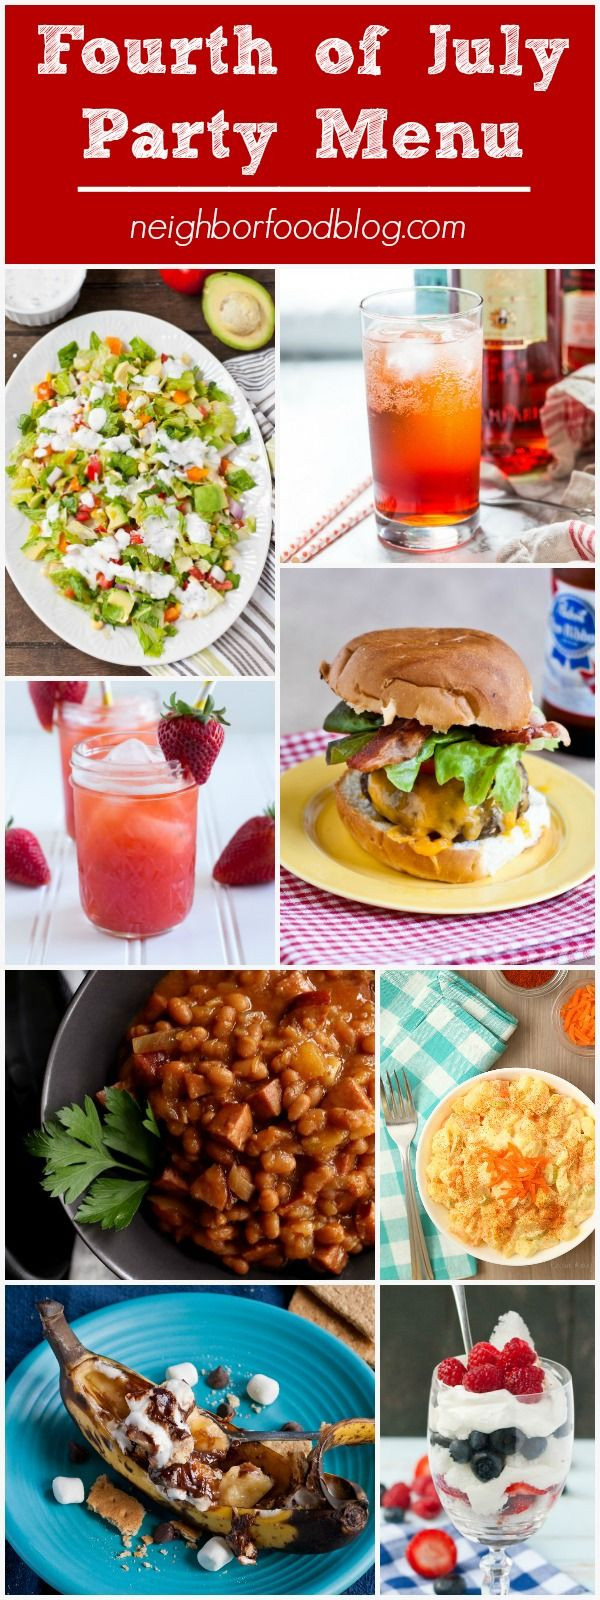 Menu Ideas For Summer Dinner Party
 Best 25 Summer dinner party menu ideas on Pinterest